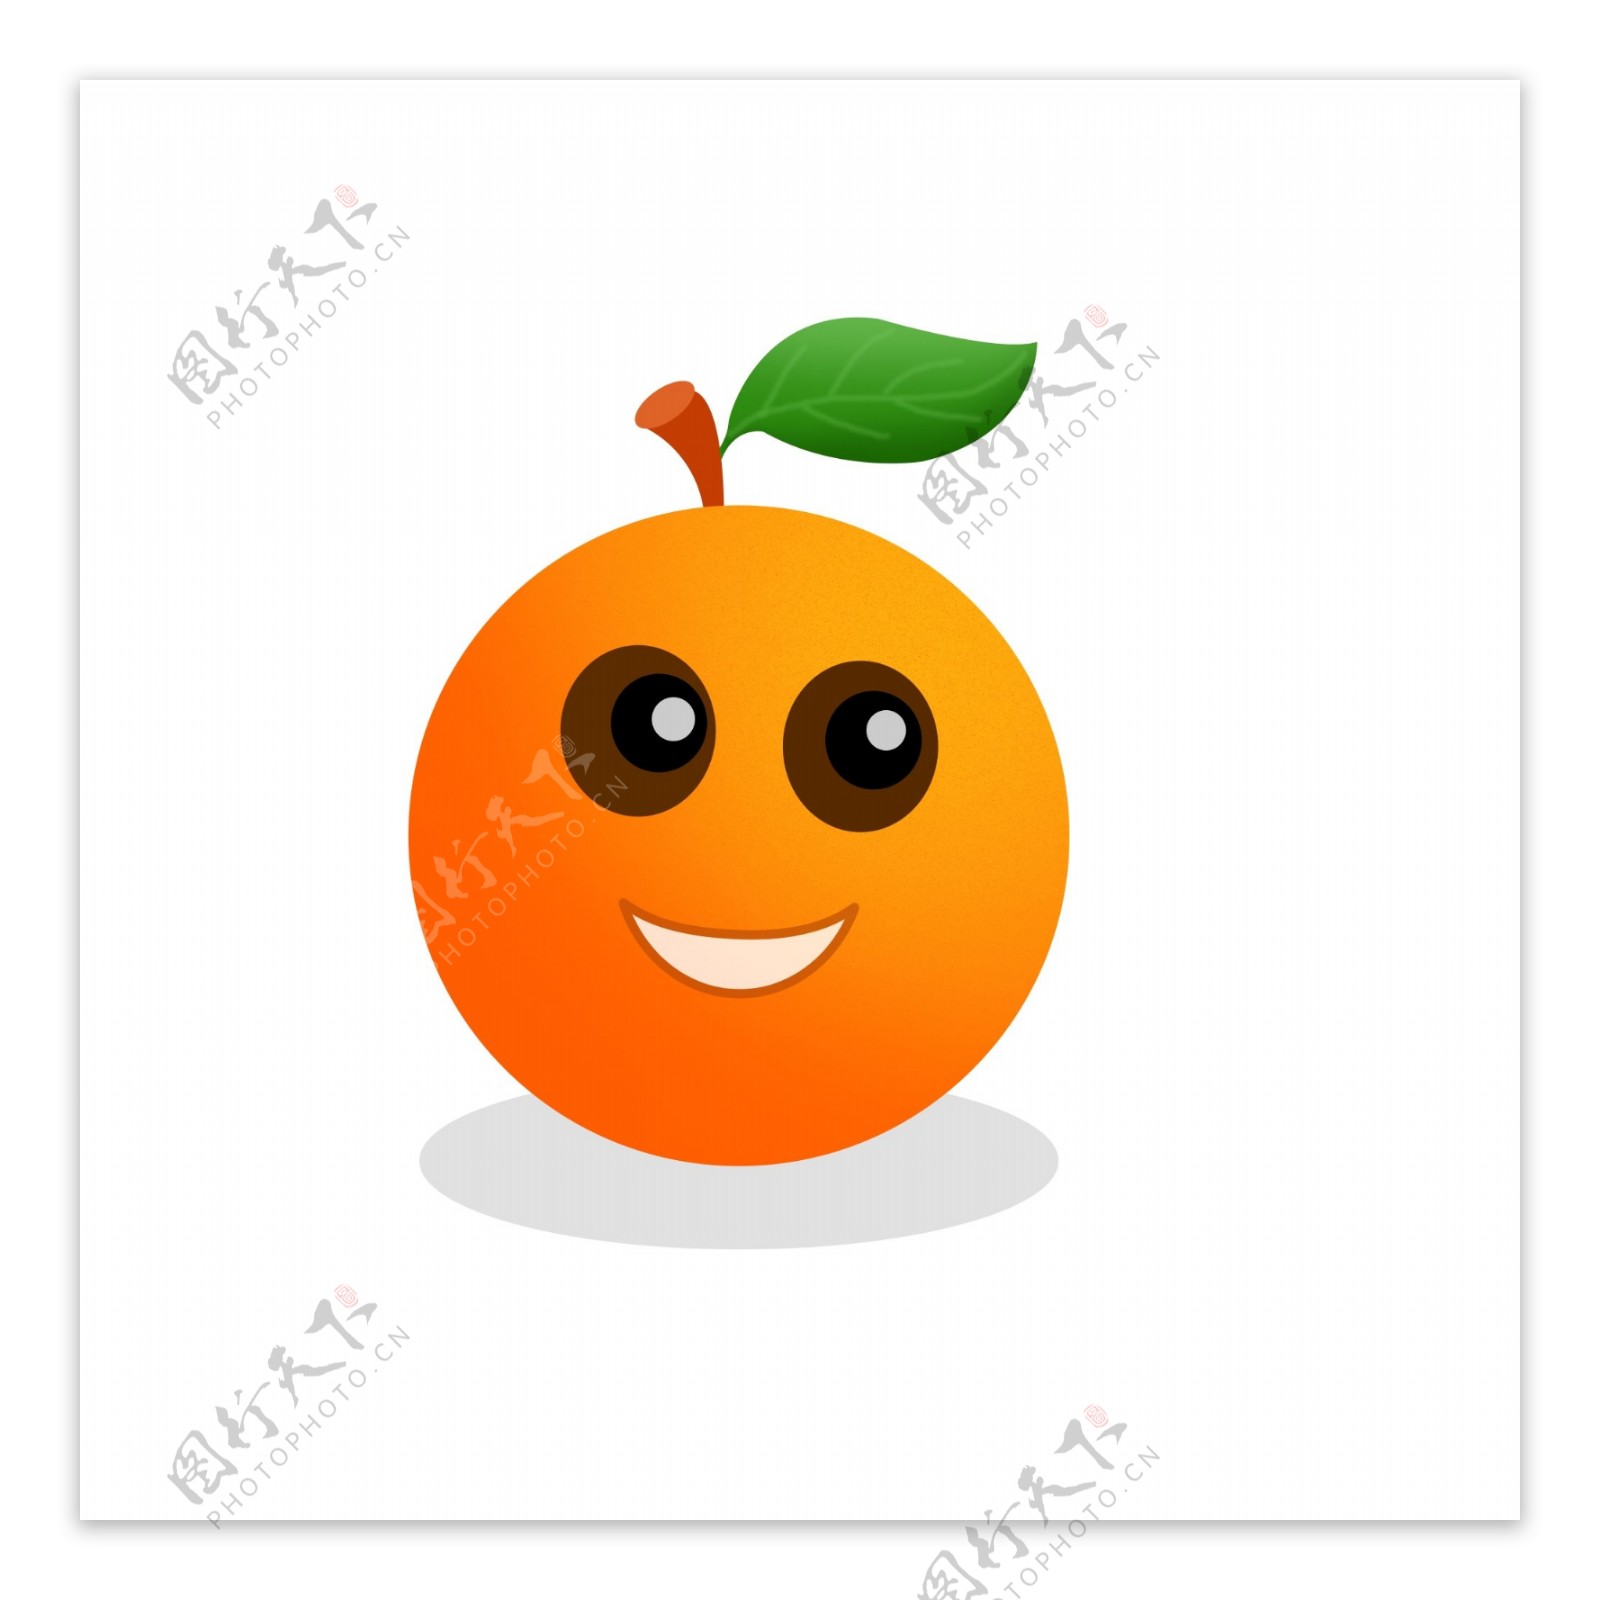 水果卡通手绘橙子素材可商用